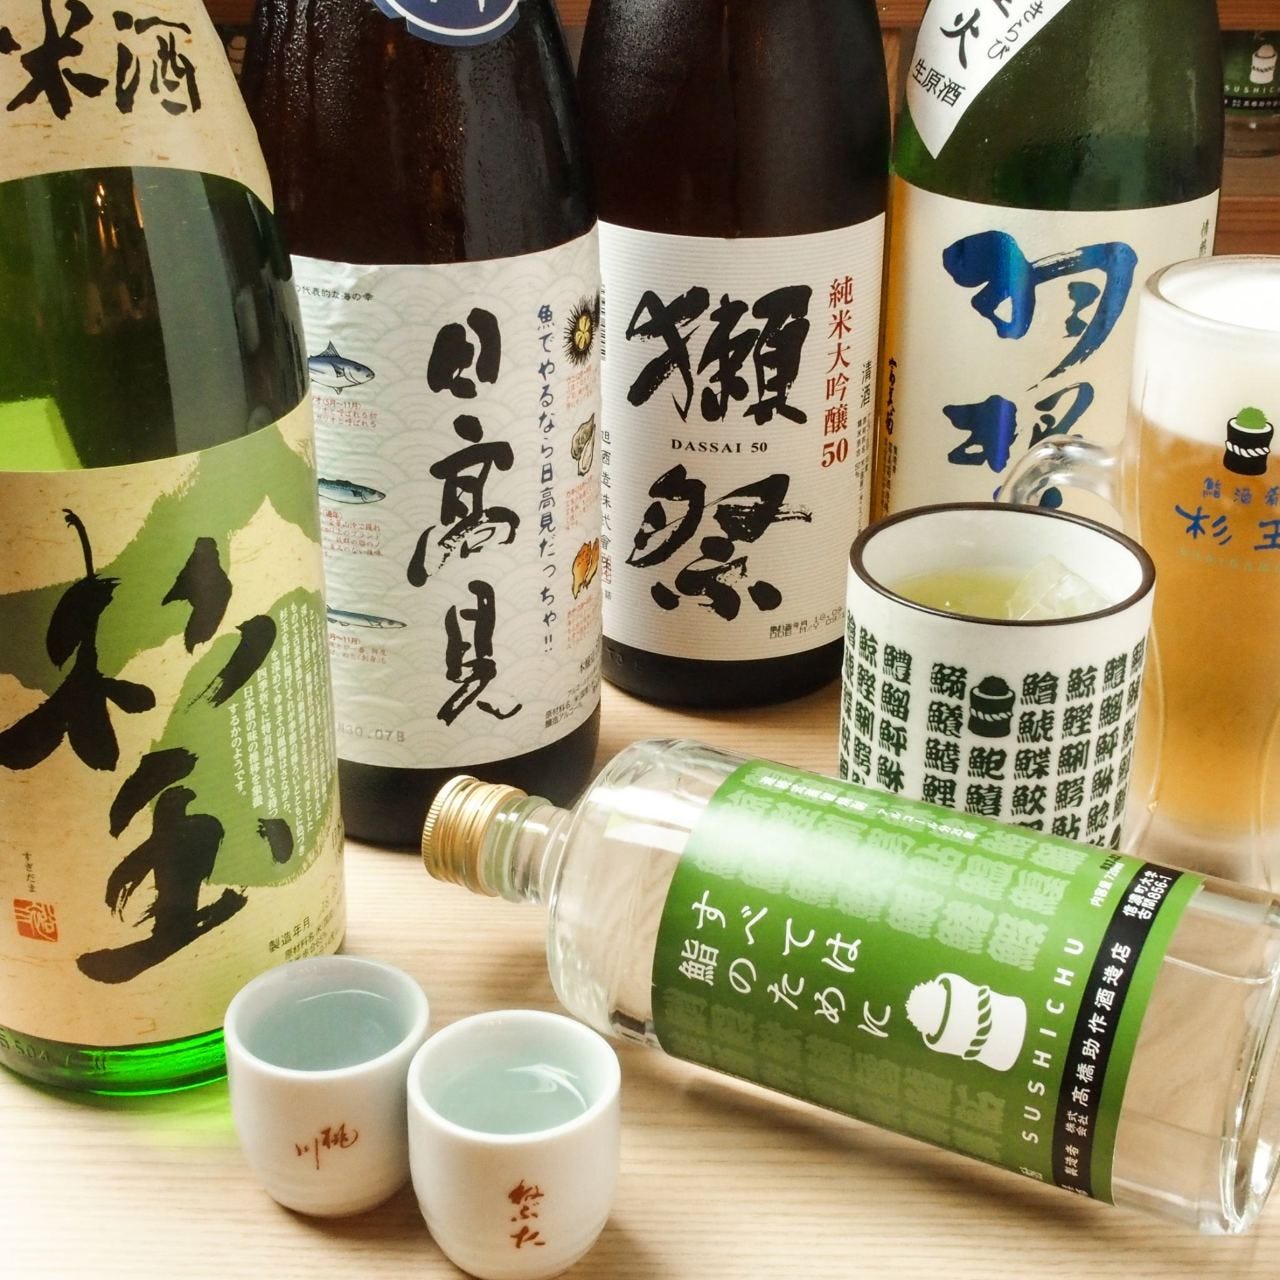 鮨・酒・肴 杉玉 JR野田駅